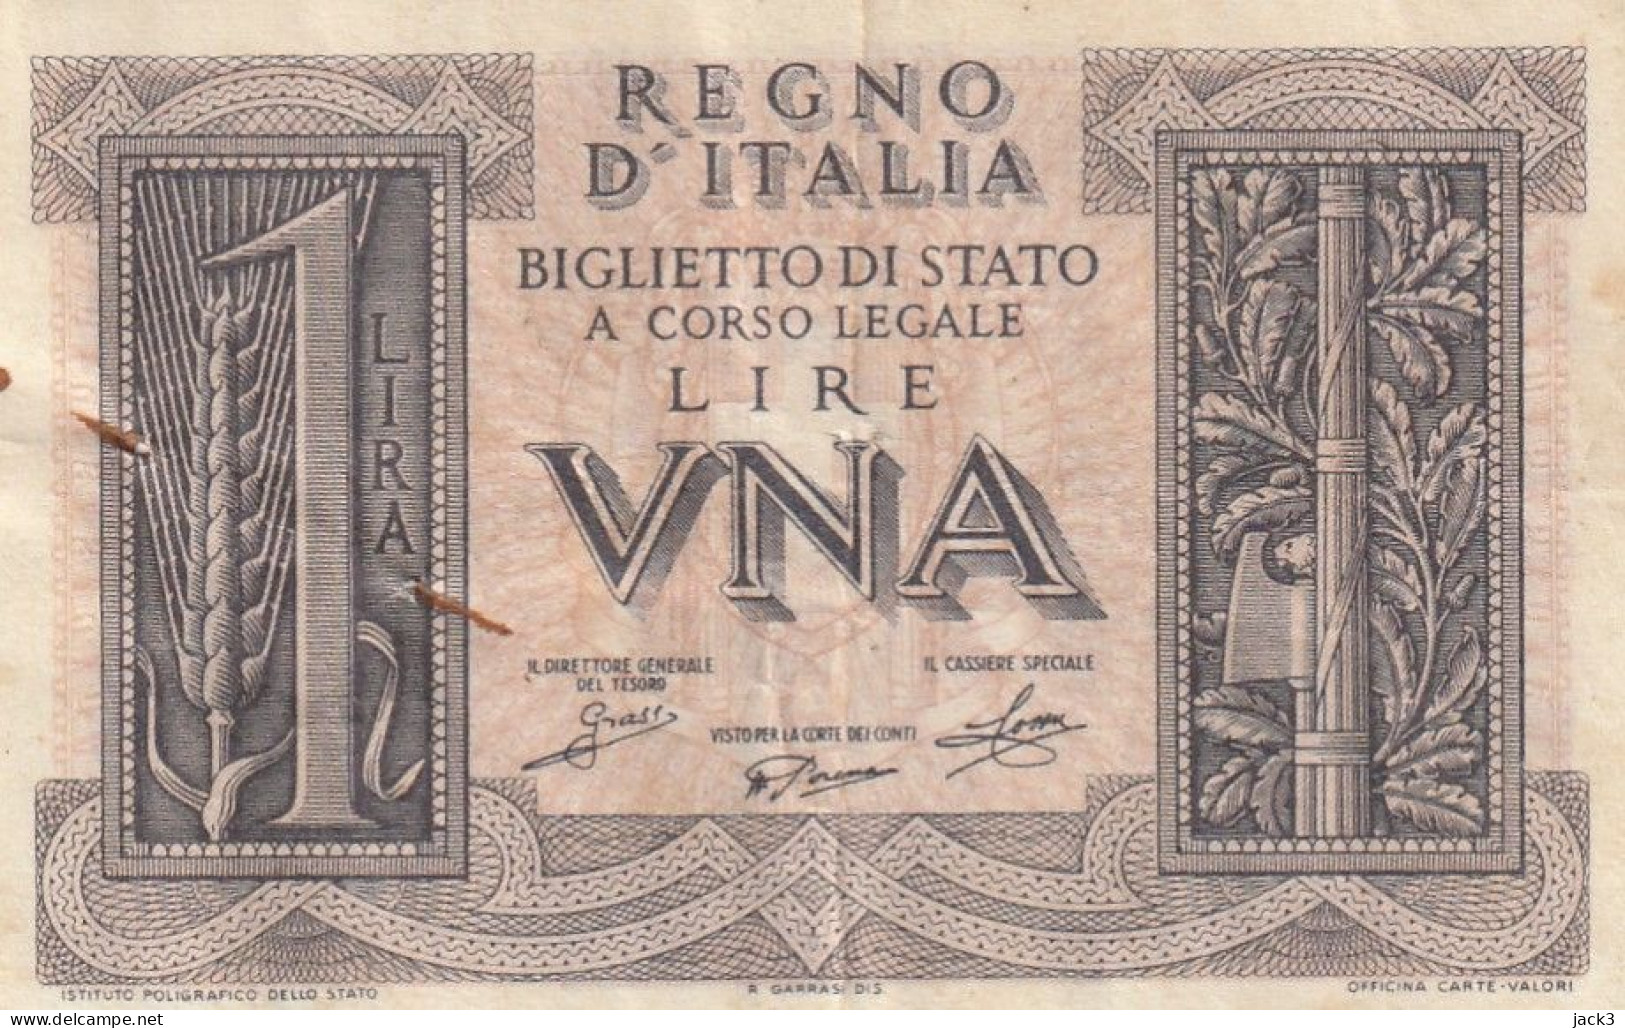 BANCONOTA - 1 LIRA BIGLIETTO DI STATO FASCIO 14/11/1939 - Italia – 1 Lira